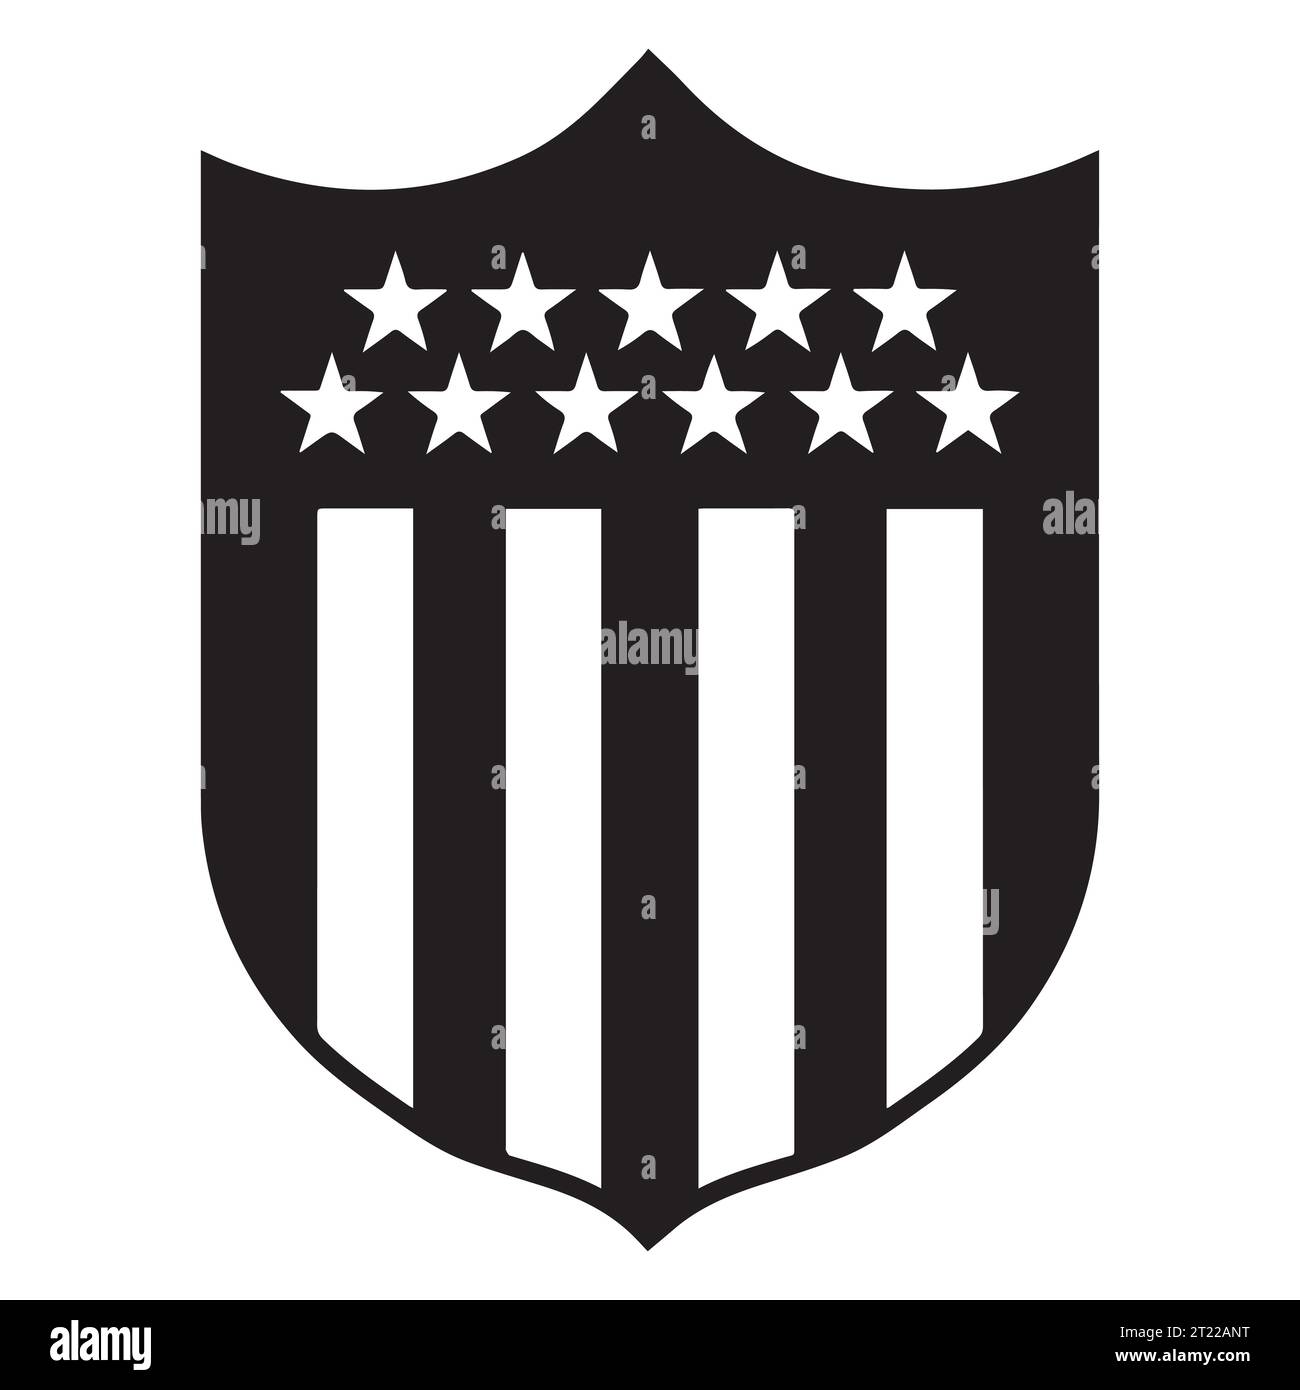 Club Atletico Penarol Schwarz-weiß-Logo uruguayische professionelle Fußball-Liga-System, Vektor-Illustration abstraktes Schwarz-weiß-bearbeitbares Bild Stock Vektor